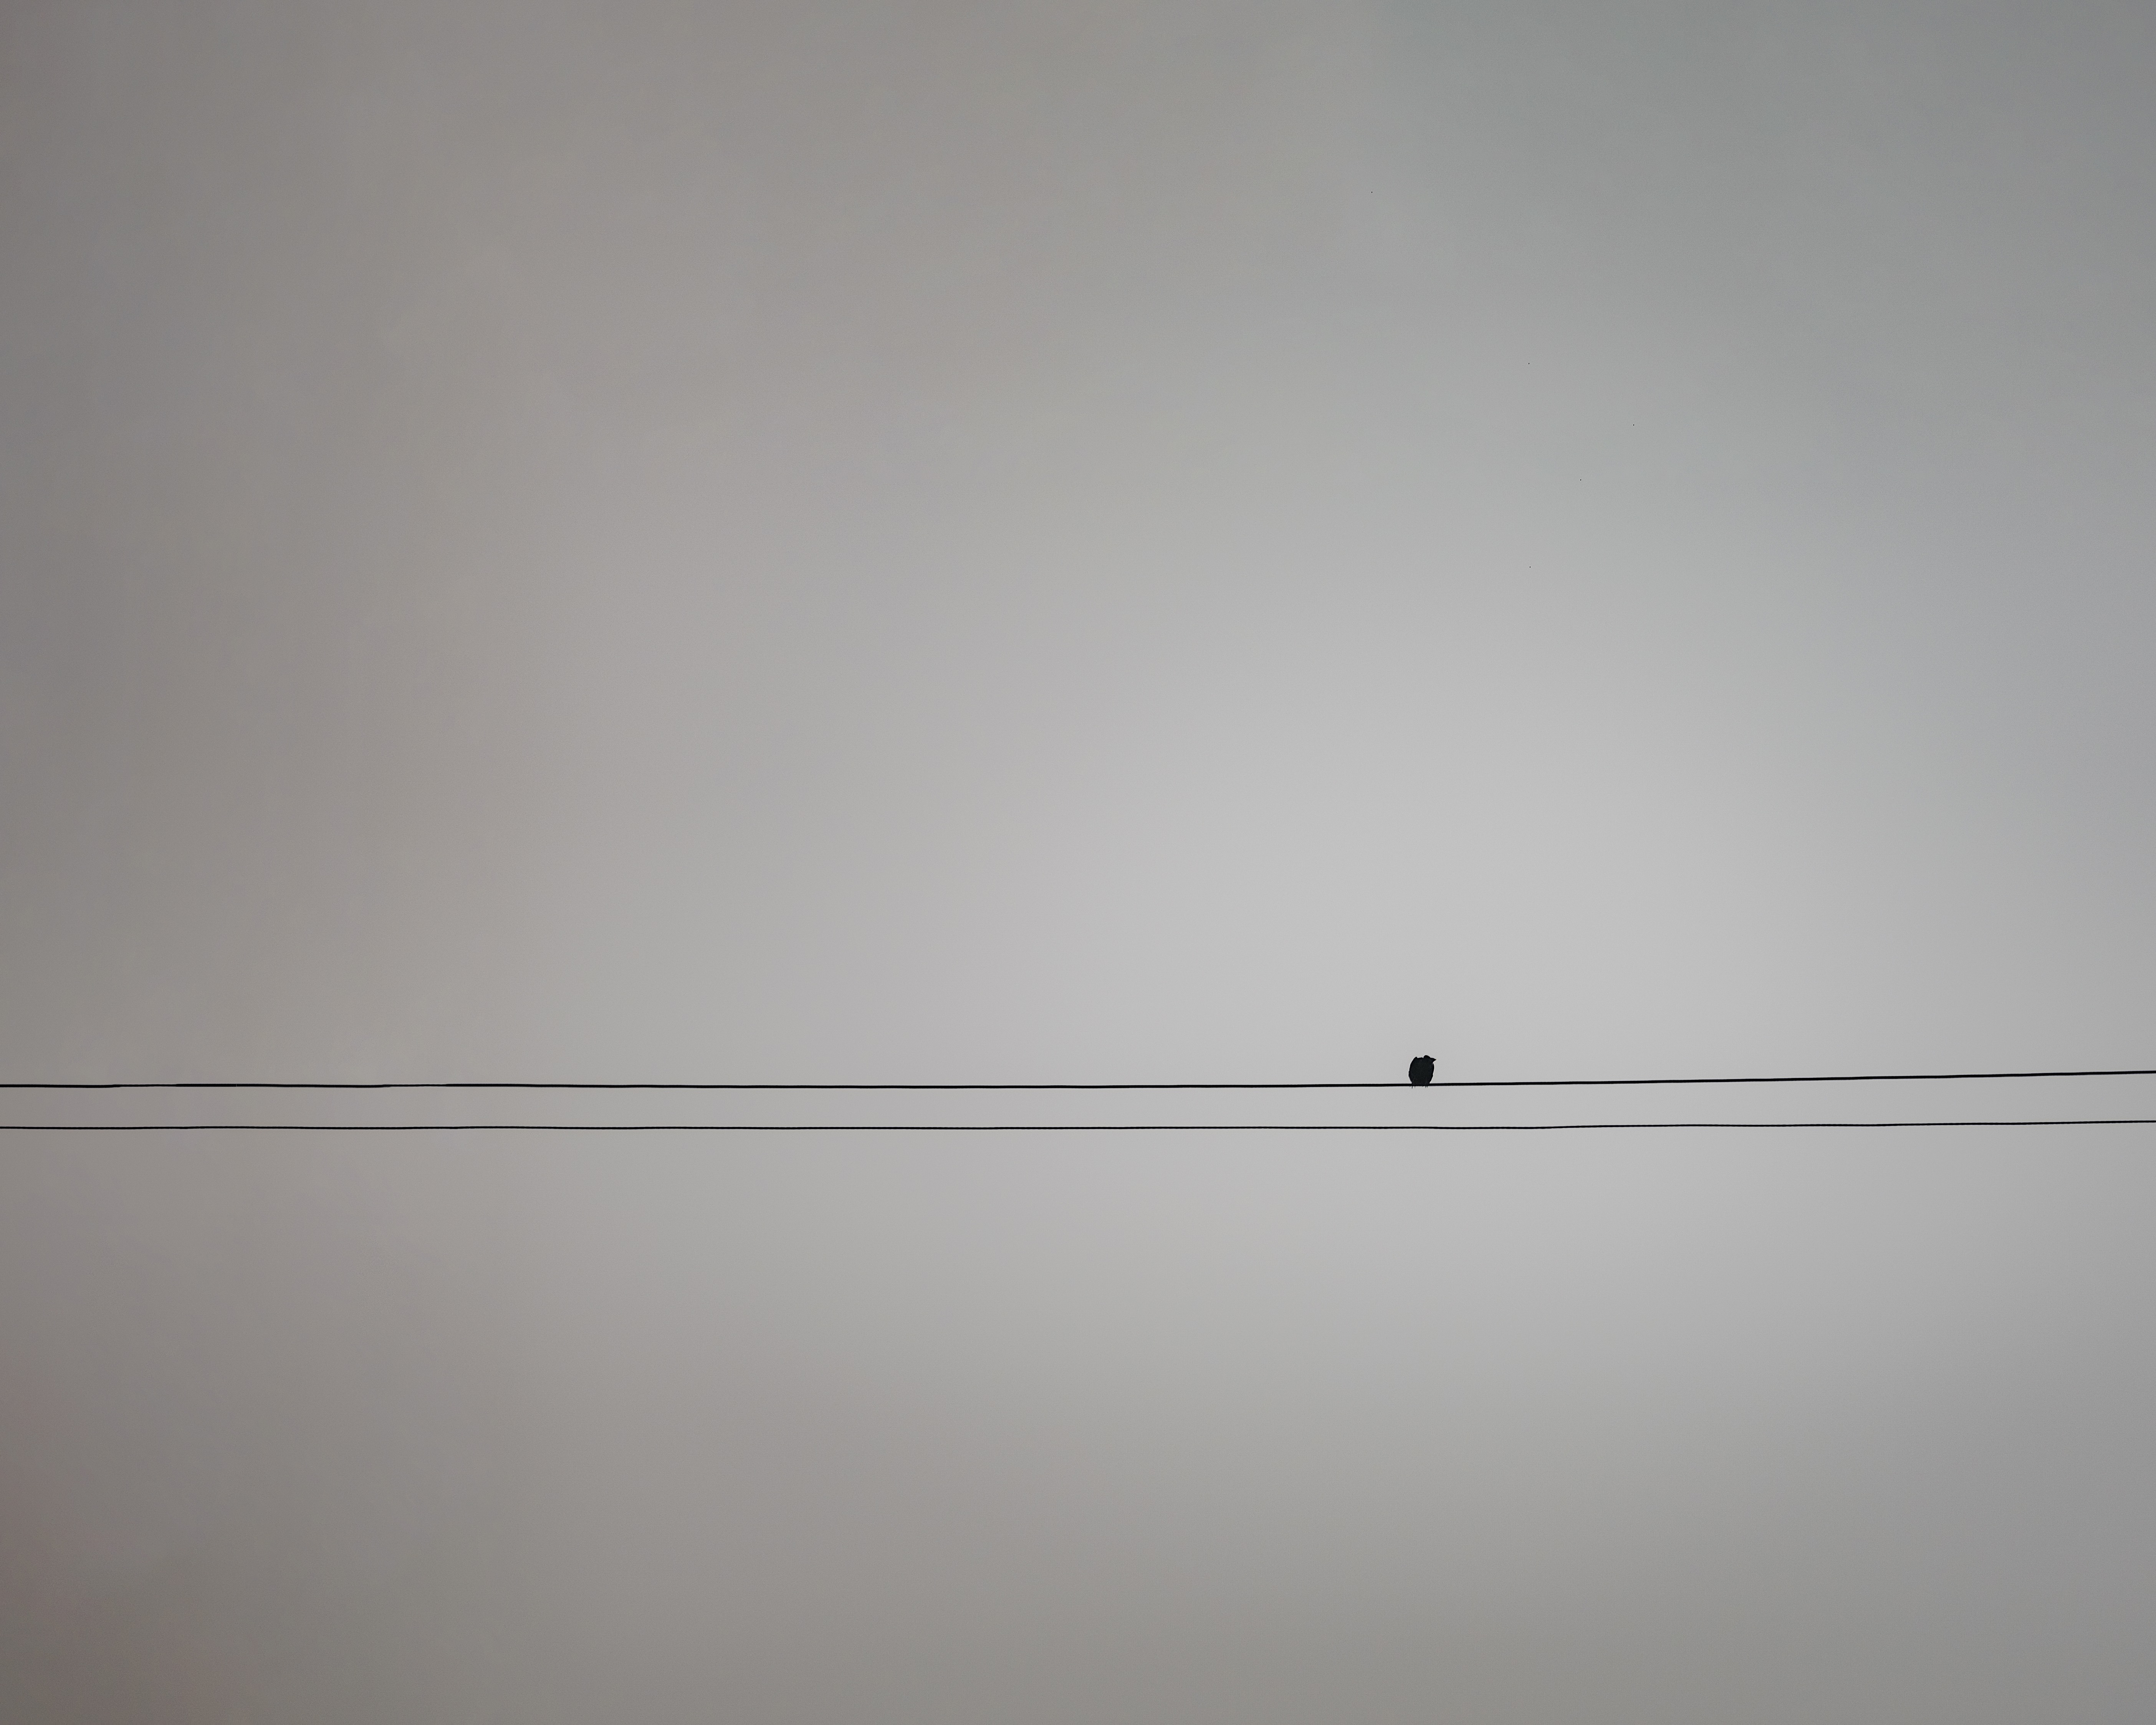 107-bird-on-wire.jpg